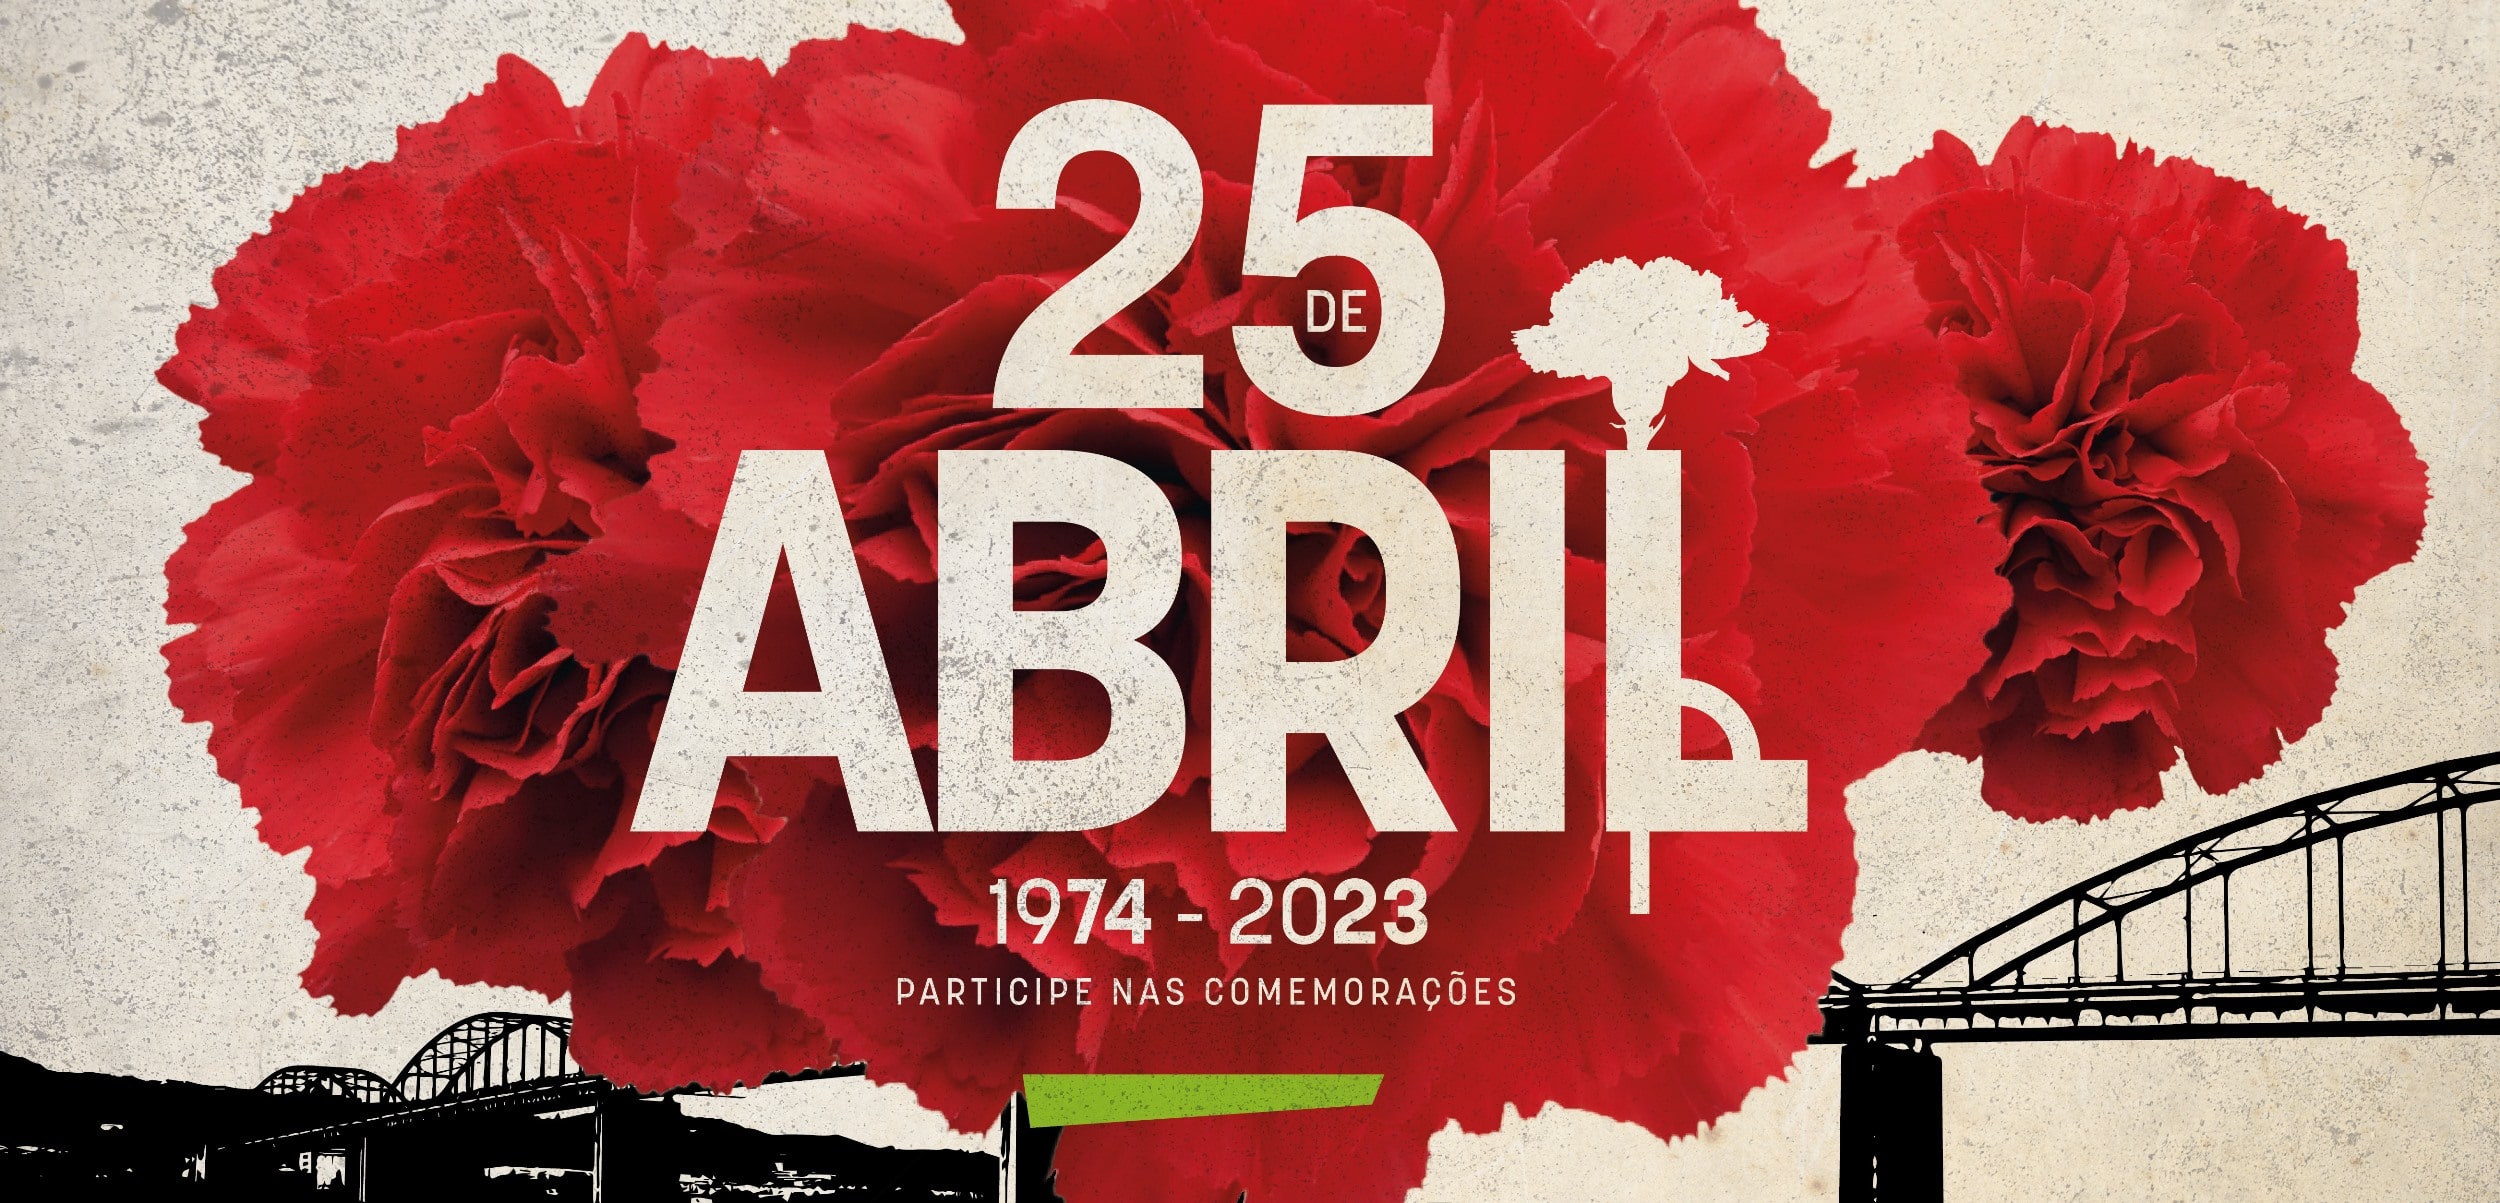 1974- 2023: 49 anos de liberdade assinalados durante todo o mês de abril